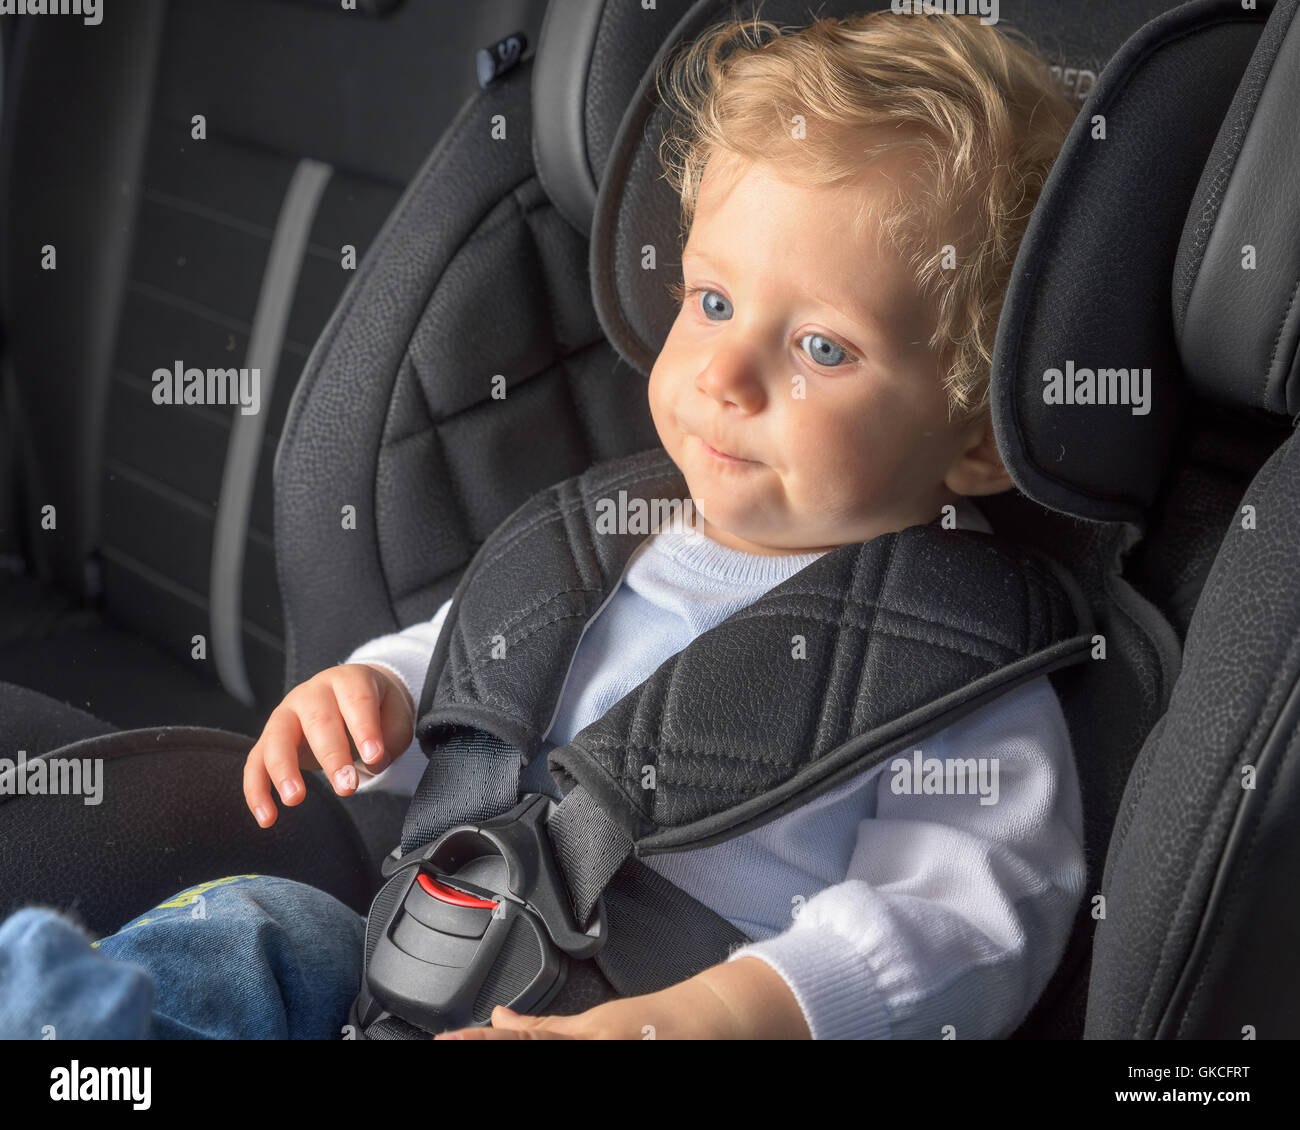 Old baby boy in car -Fotos und -Bildmaterial in hoher Auflösung - Seite 2 -  Alamy